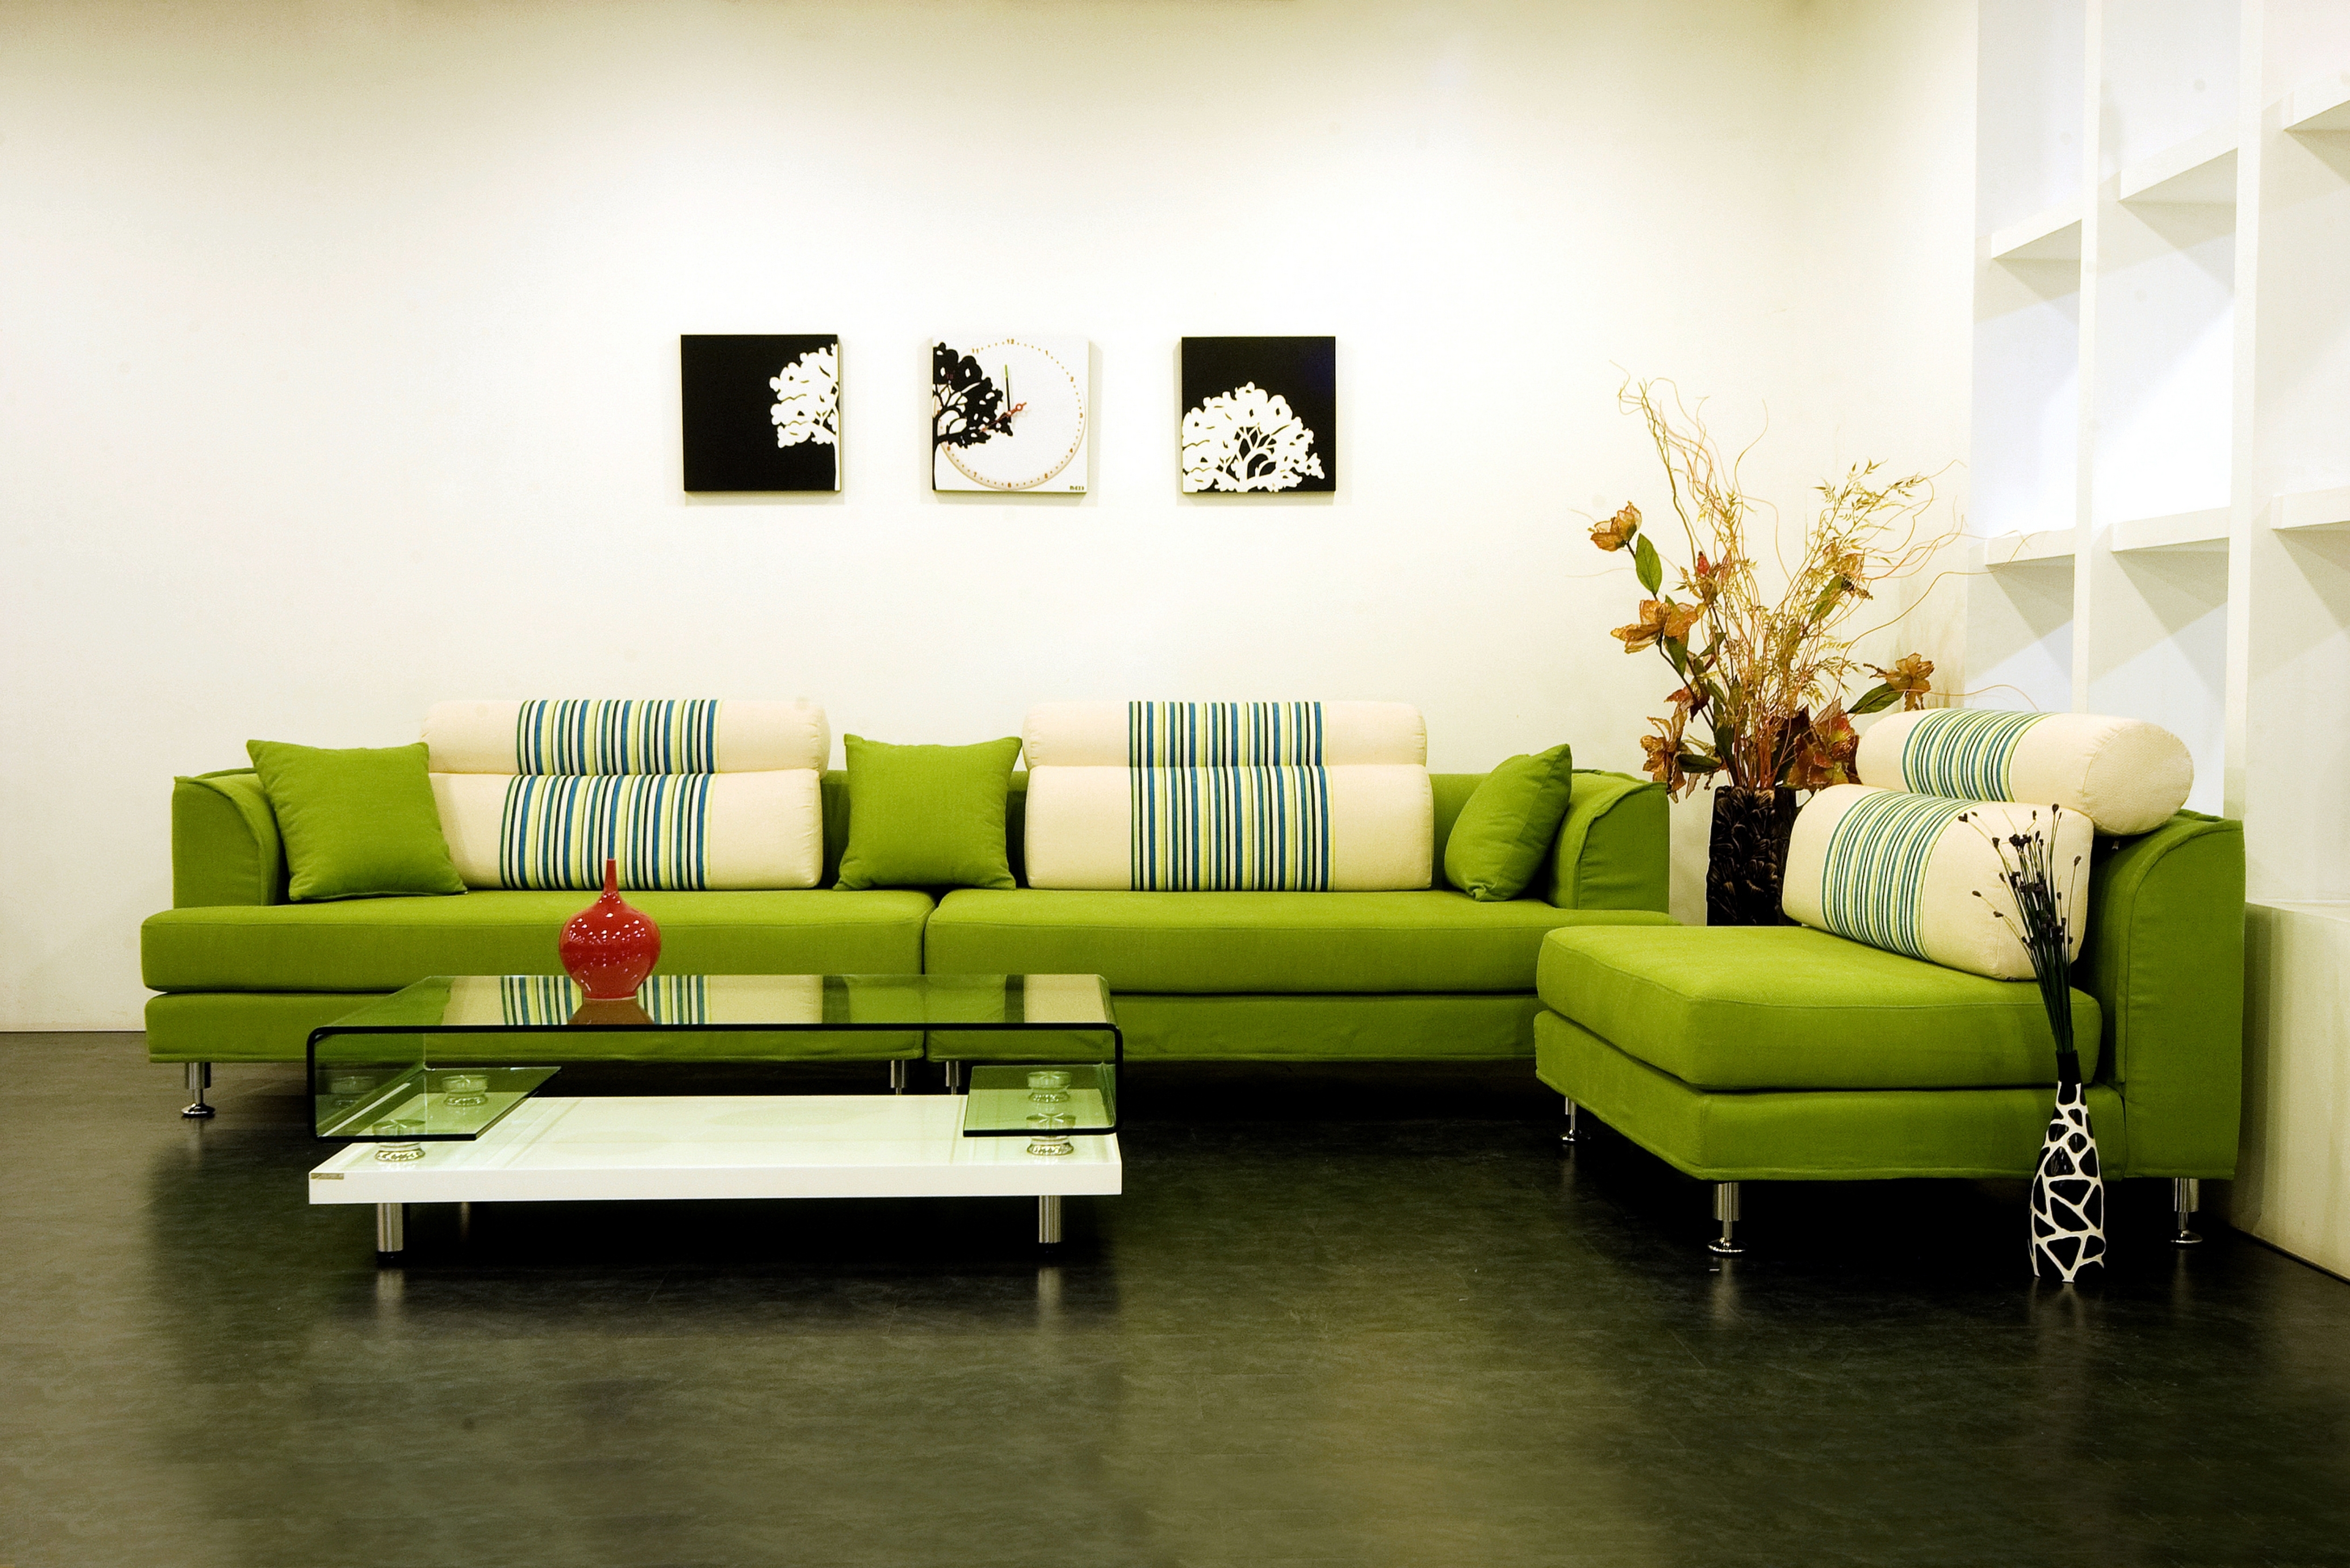 102966 скачать обои квартира, гостиная, диван, интерьер, дизайн, картины, разное, зеленый, стиль, подушки, столик, вазы - заставки и картинки бесплатно